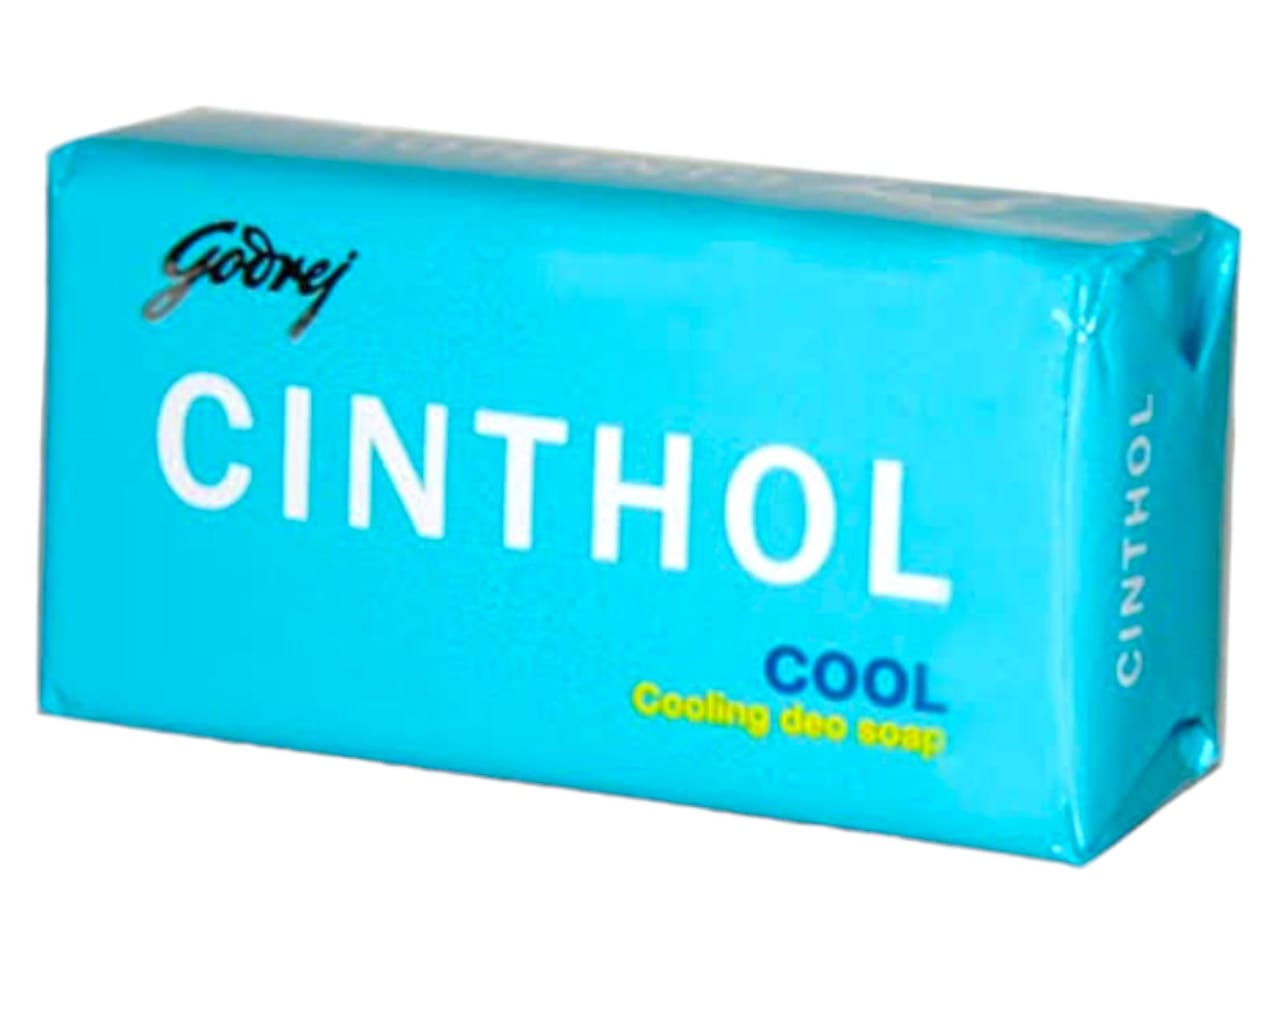 Cinthol Cool Shop 